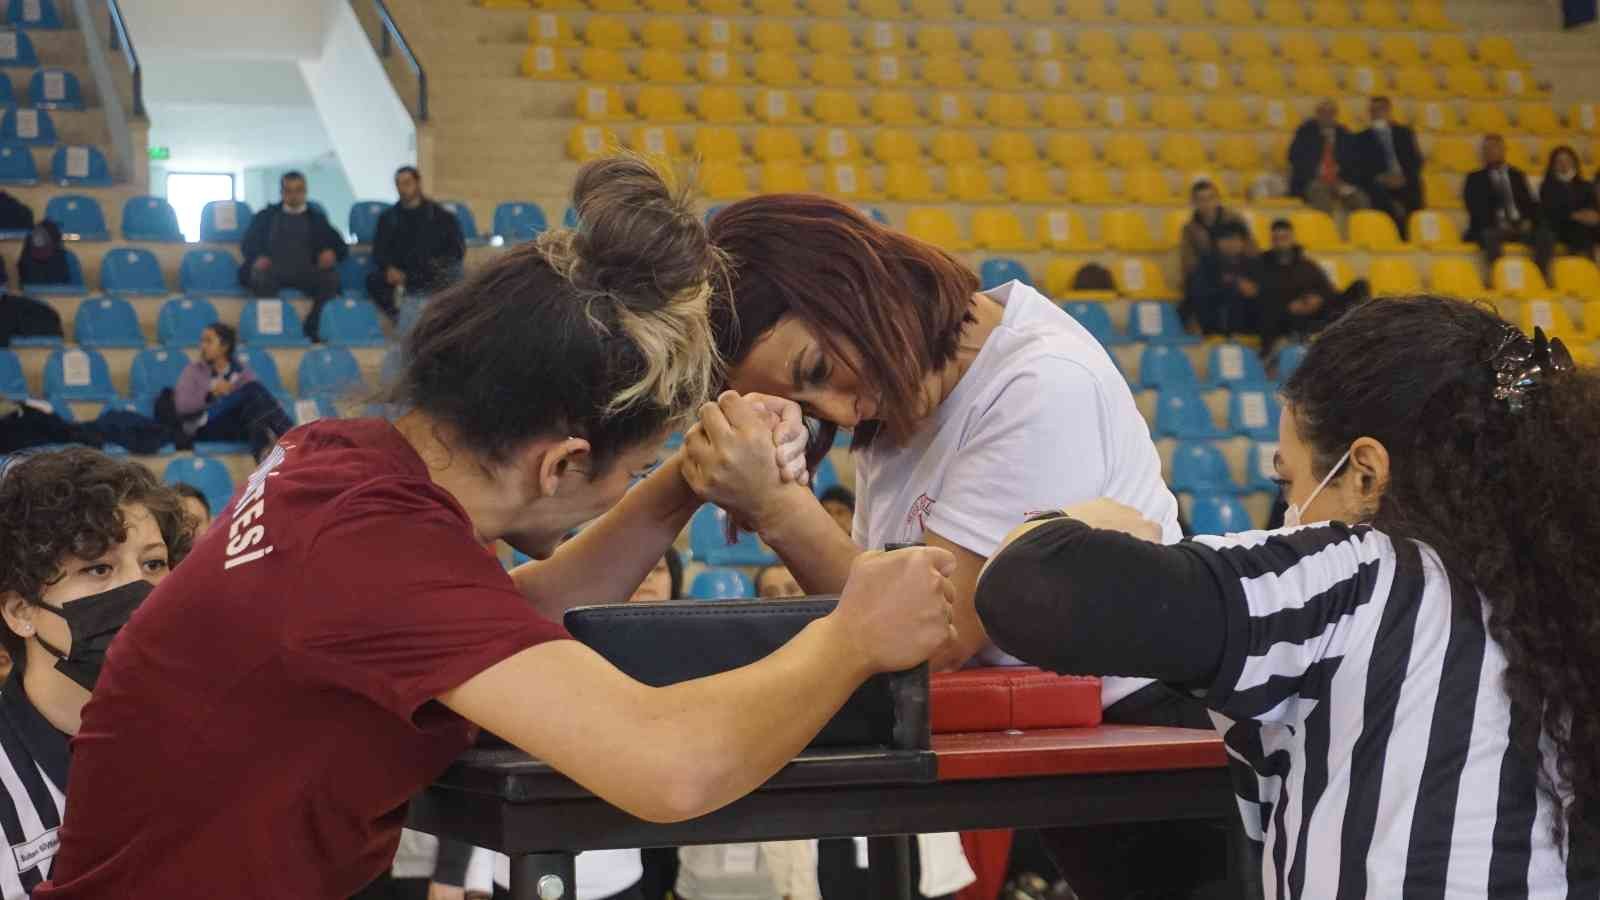 Türkiye’nin çeşitli bölgelerinden 34 üniversitenin ve yaklaşık 200 sporcunun katılım sağladığı ’Üniversitelerarası Bilek Güreşi’ yarışması ...